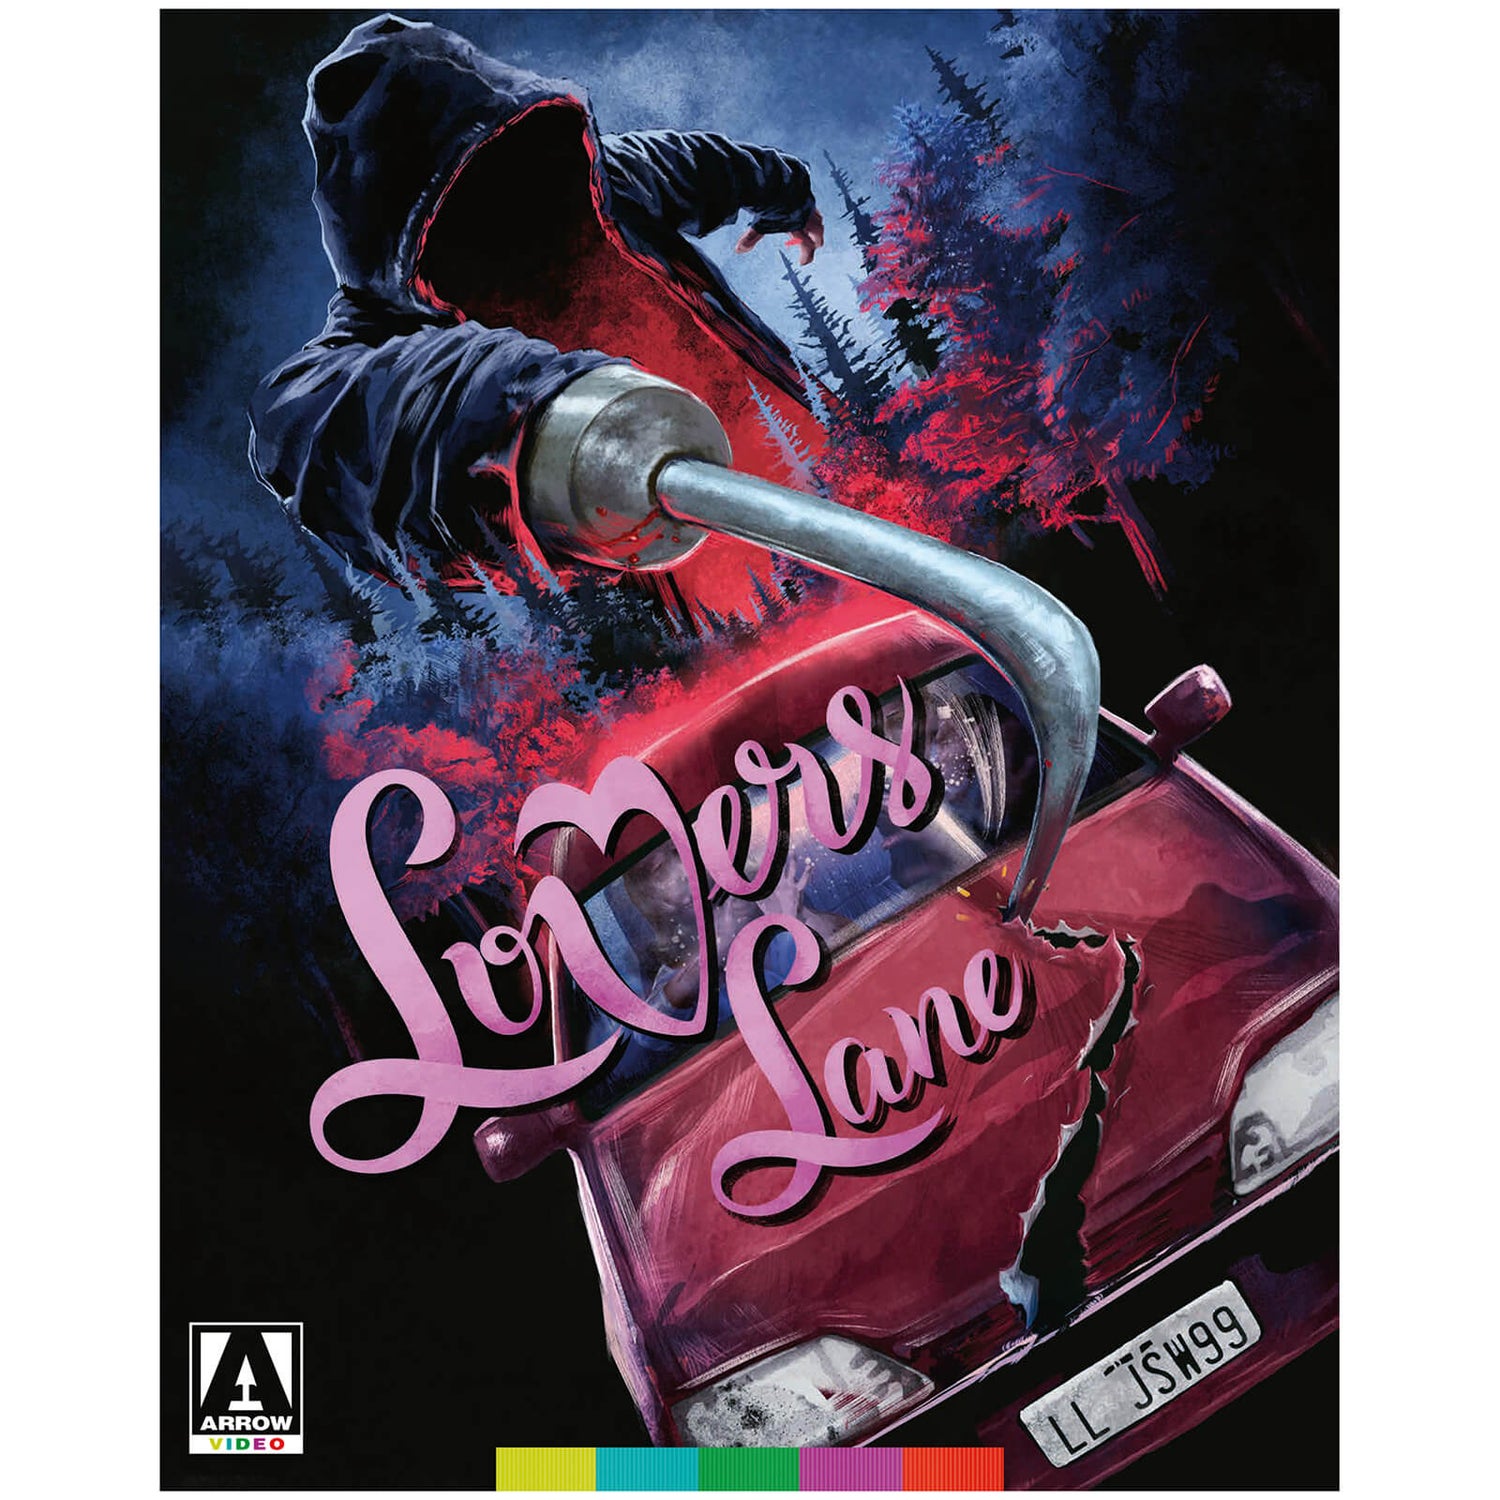 Lovers Lane Blu-ray